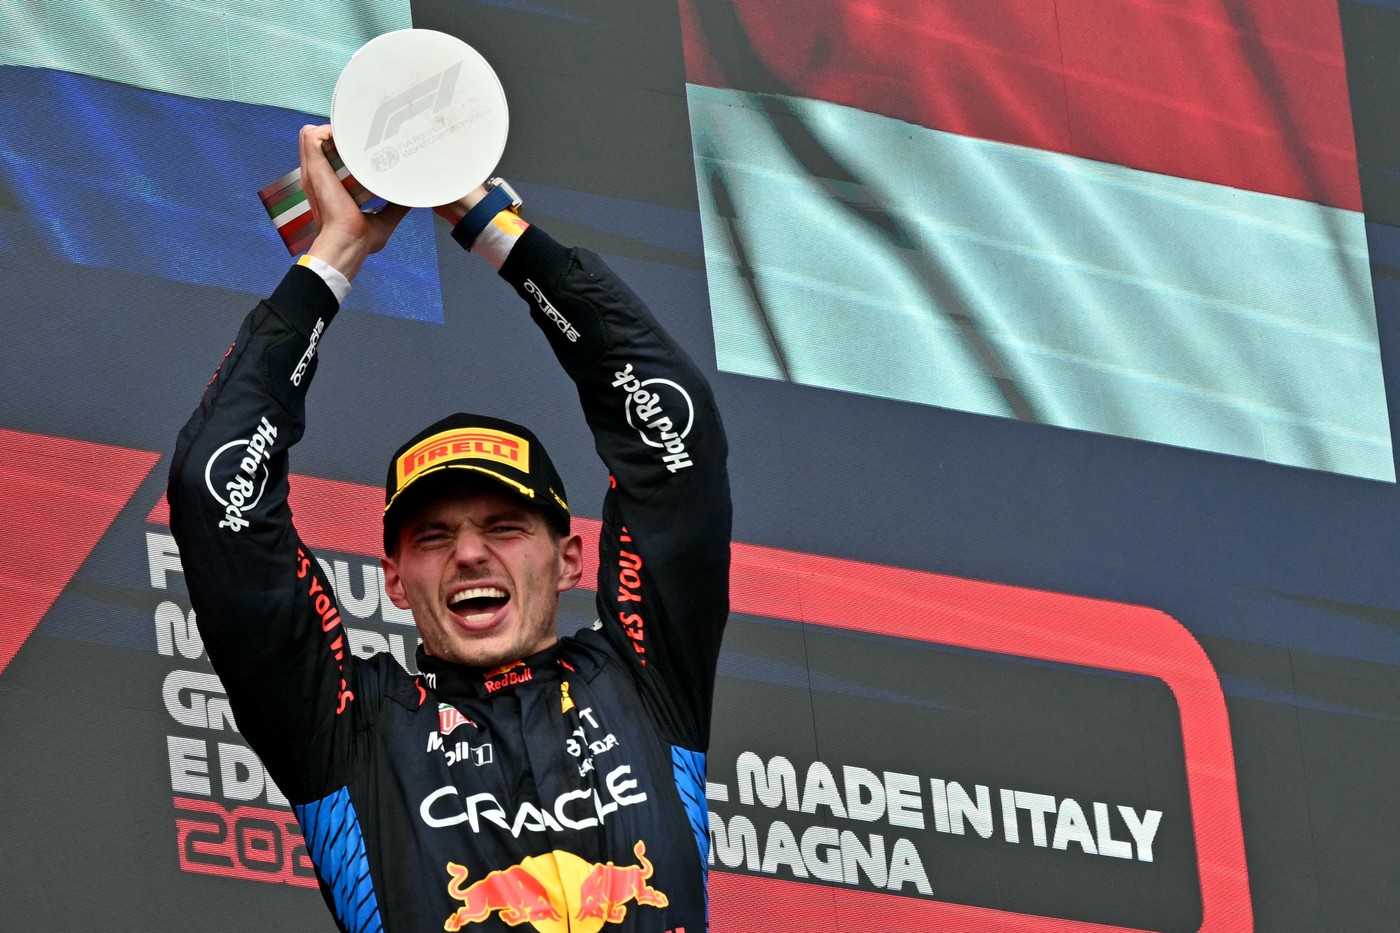 Max Verstappen a câștigat Marele Premiu de la Imola! Cifra impresionantă la care a ajuns olandezul